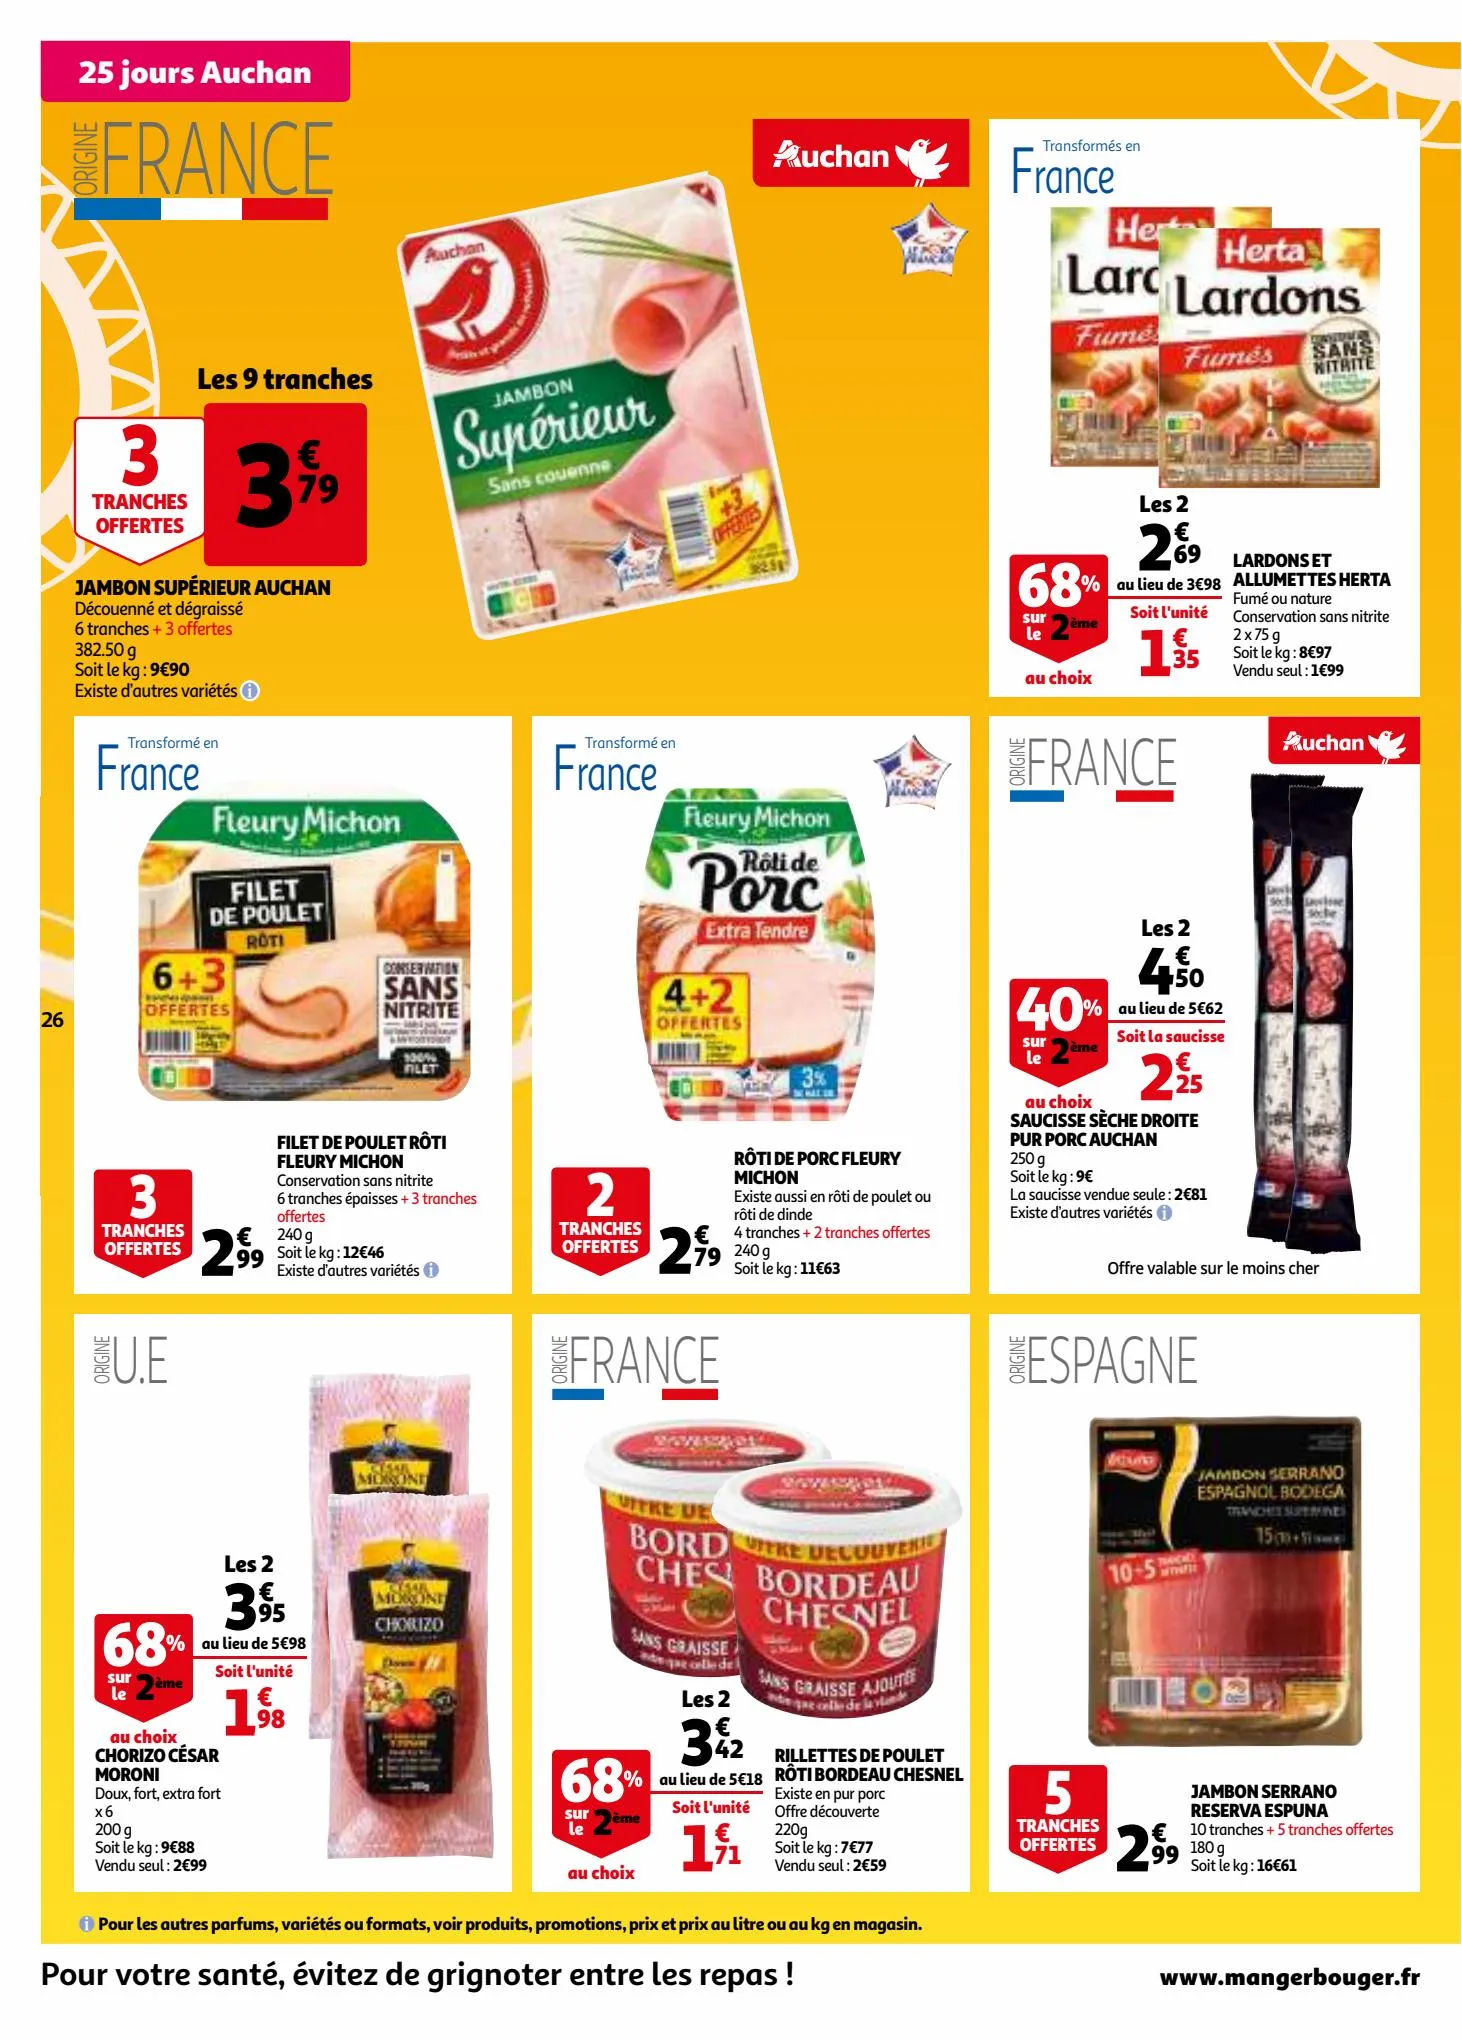 Catalogue 25 jours Auchan, page 00026